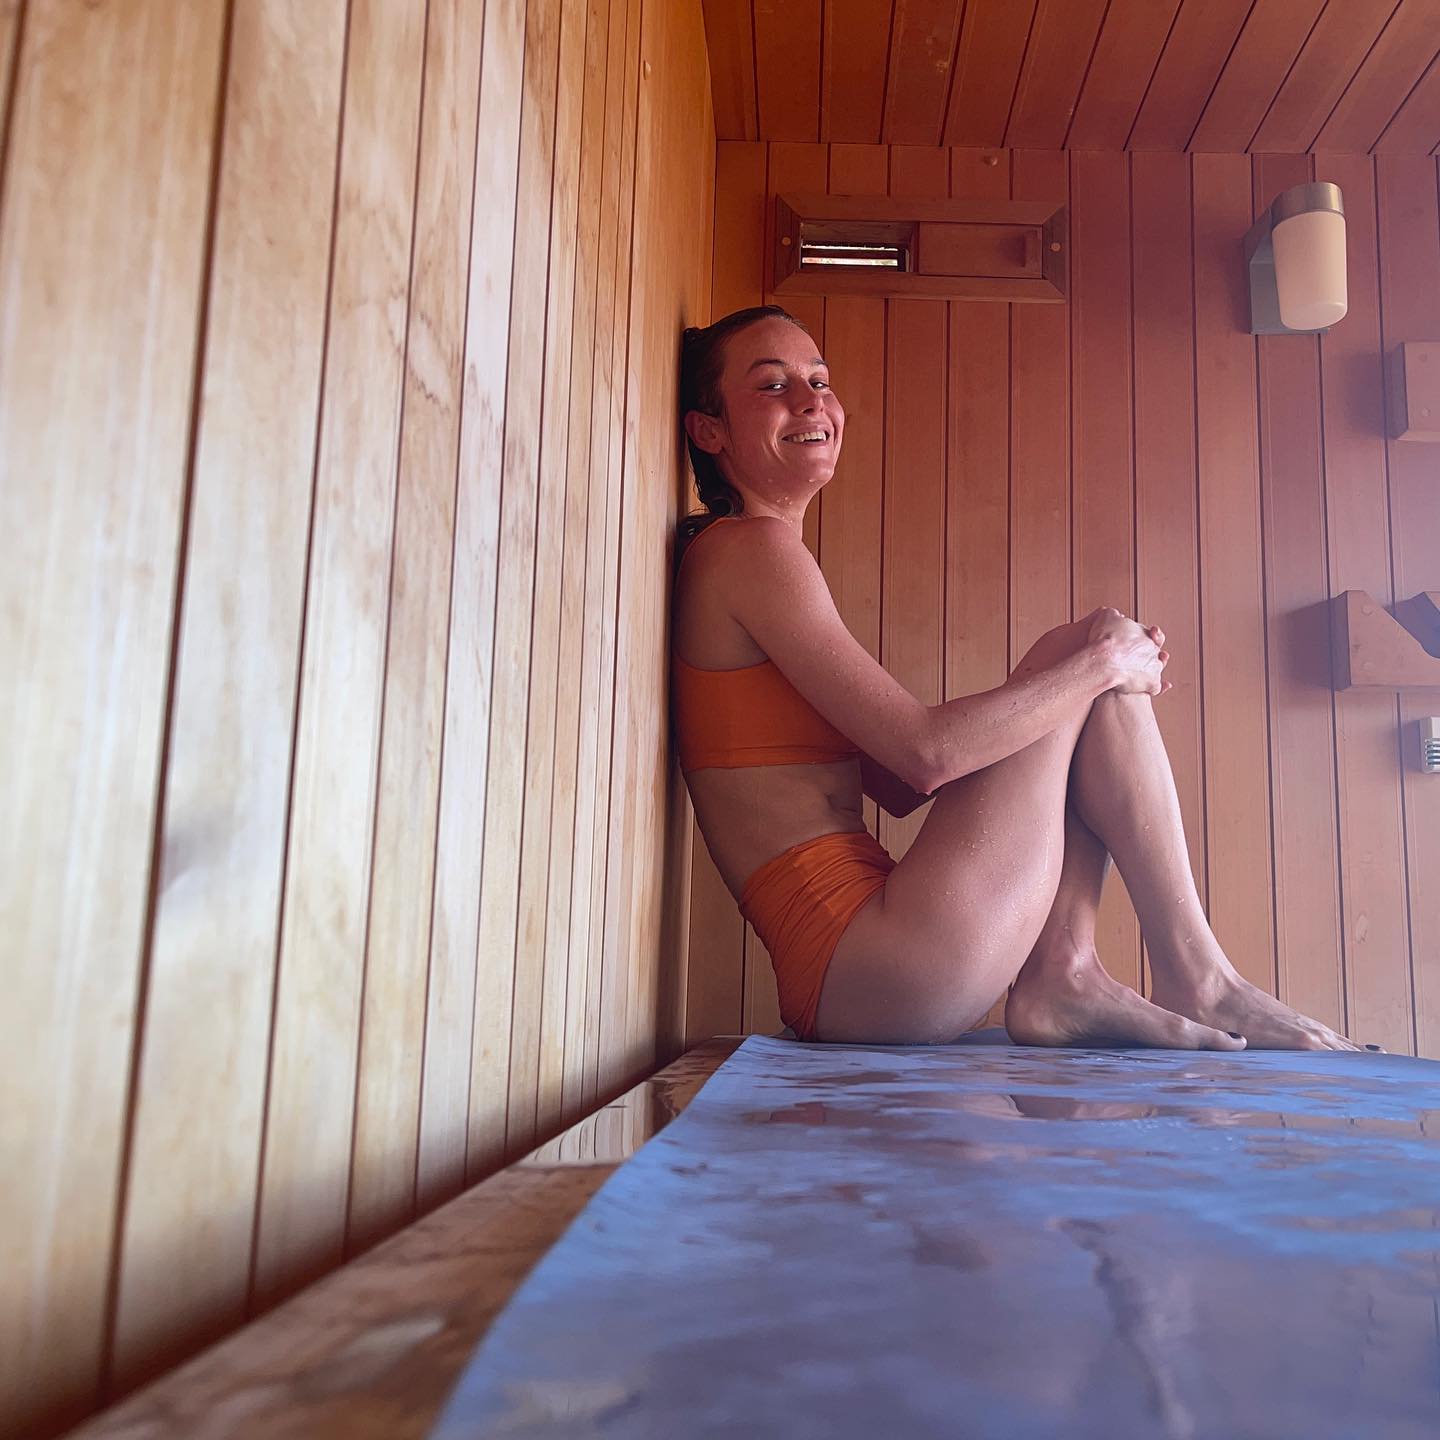 PHOTOS La sance de sauna de Brie Larson! - Photo 2